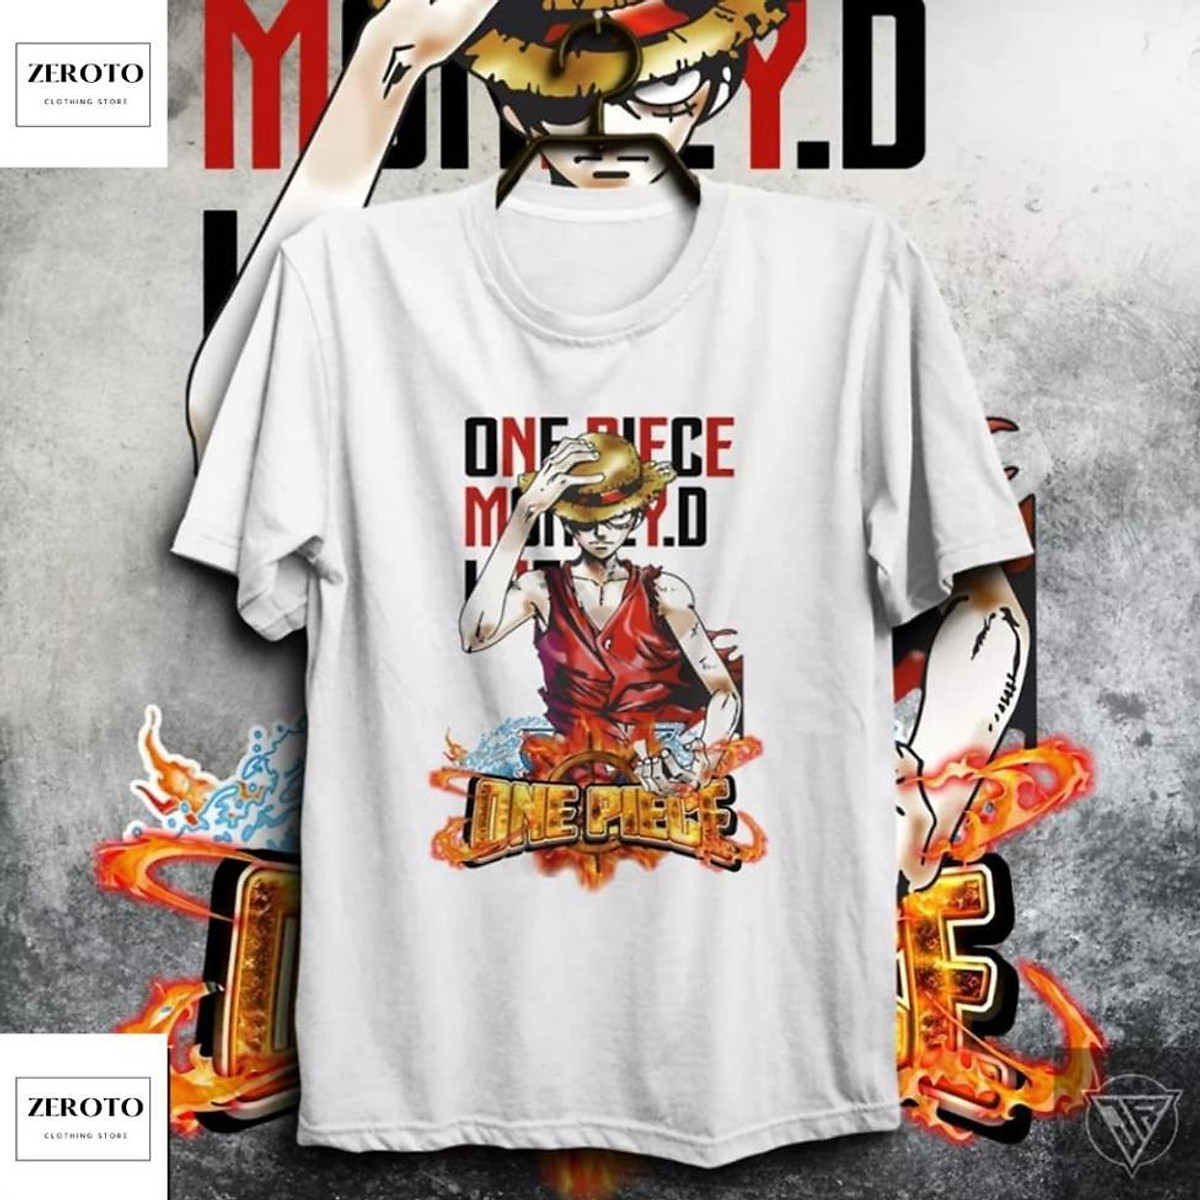 Áo phông One Piece: Năm 2024, áo phông One Piece không chỉ là một sản phẩm thời trang, mà còn là niềm tự hào và sự khẳng định đẳng cấp của bạn. Với sự phát triển của công nghệ in ấn, việc sản xuất áo phông One Piece đã trở nên dễ dàng hơn bao giờ hết. Giờ đây, bạn có thể tùy chọn mẫu mã, màu sắc và chất liệu để tạo ra một chiếc áo phông hoàn hảo cho riêng mình.